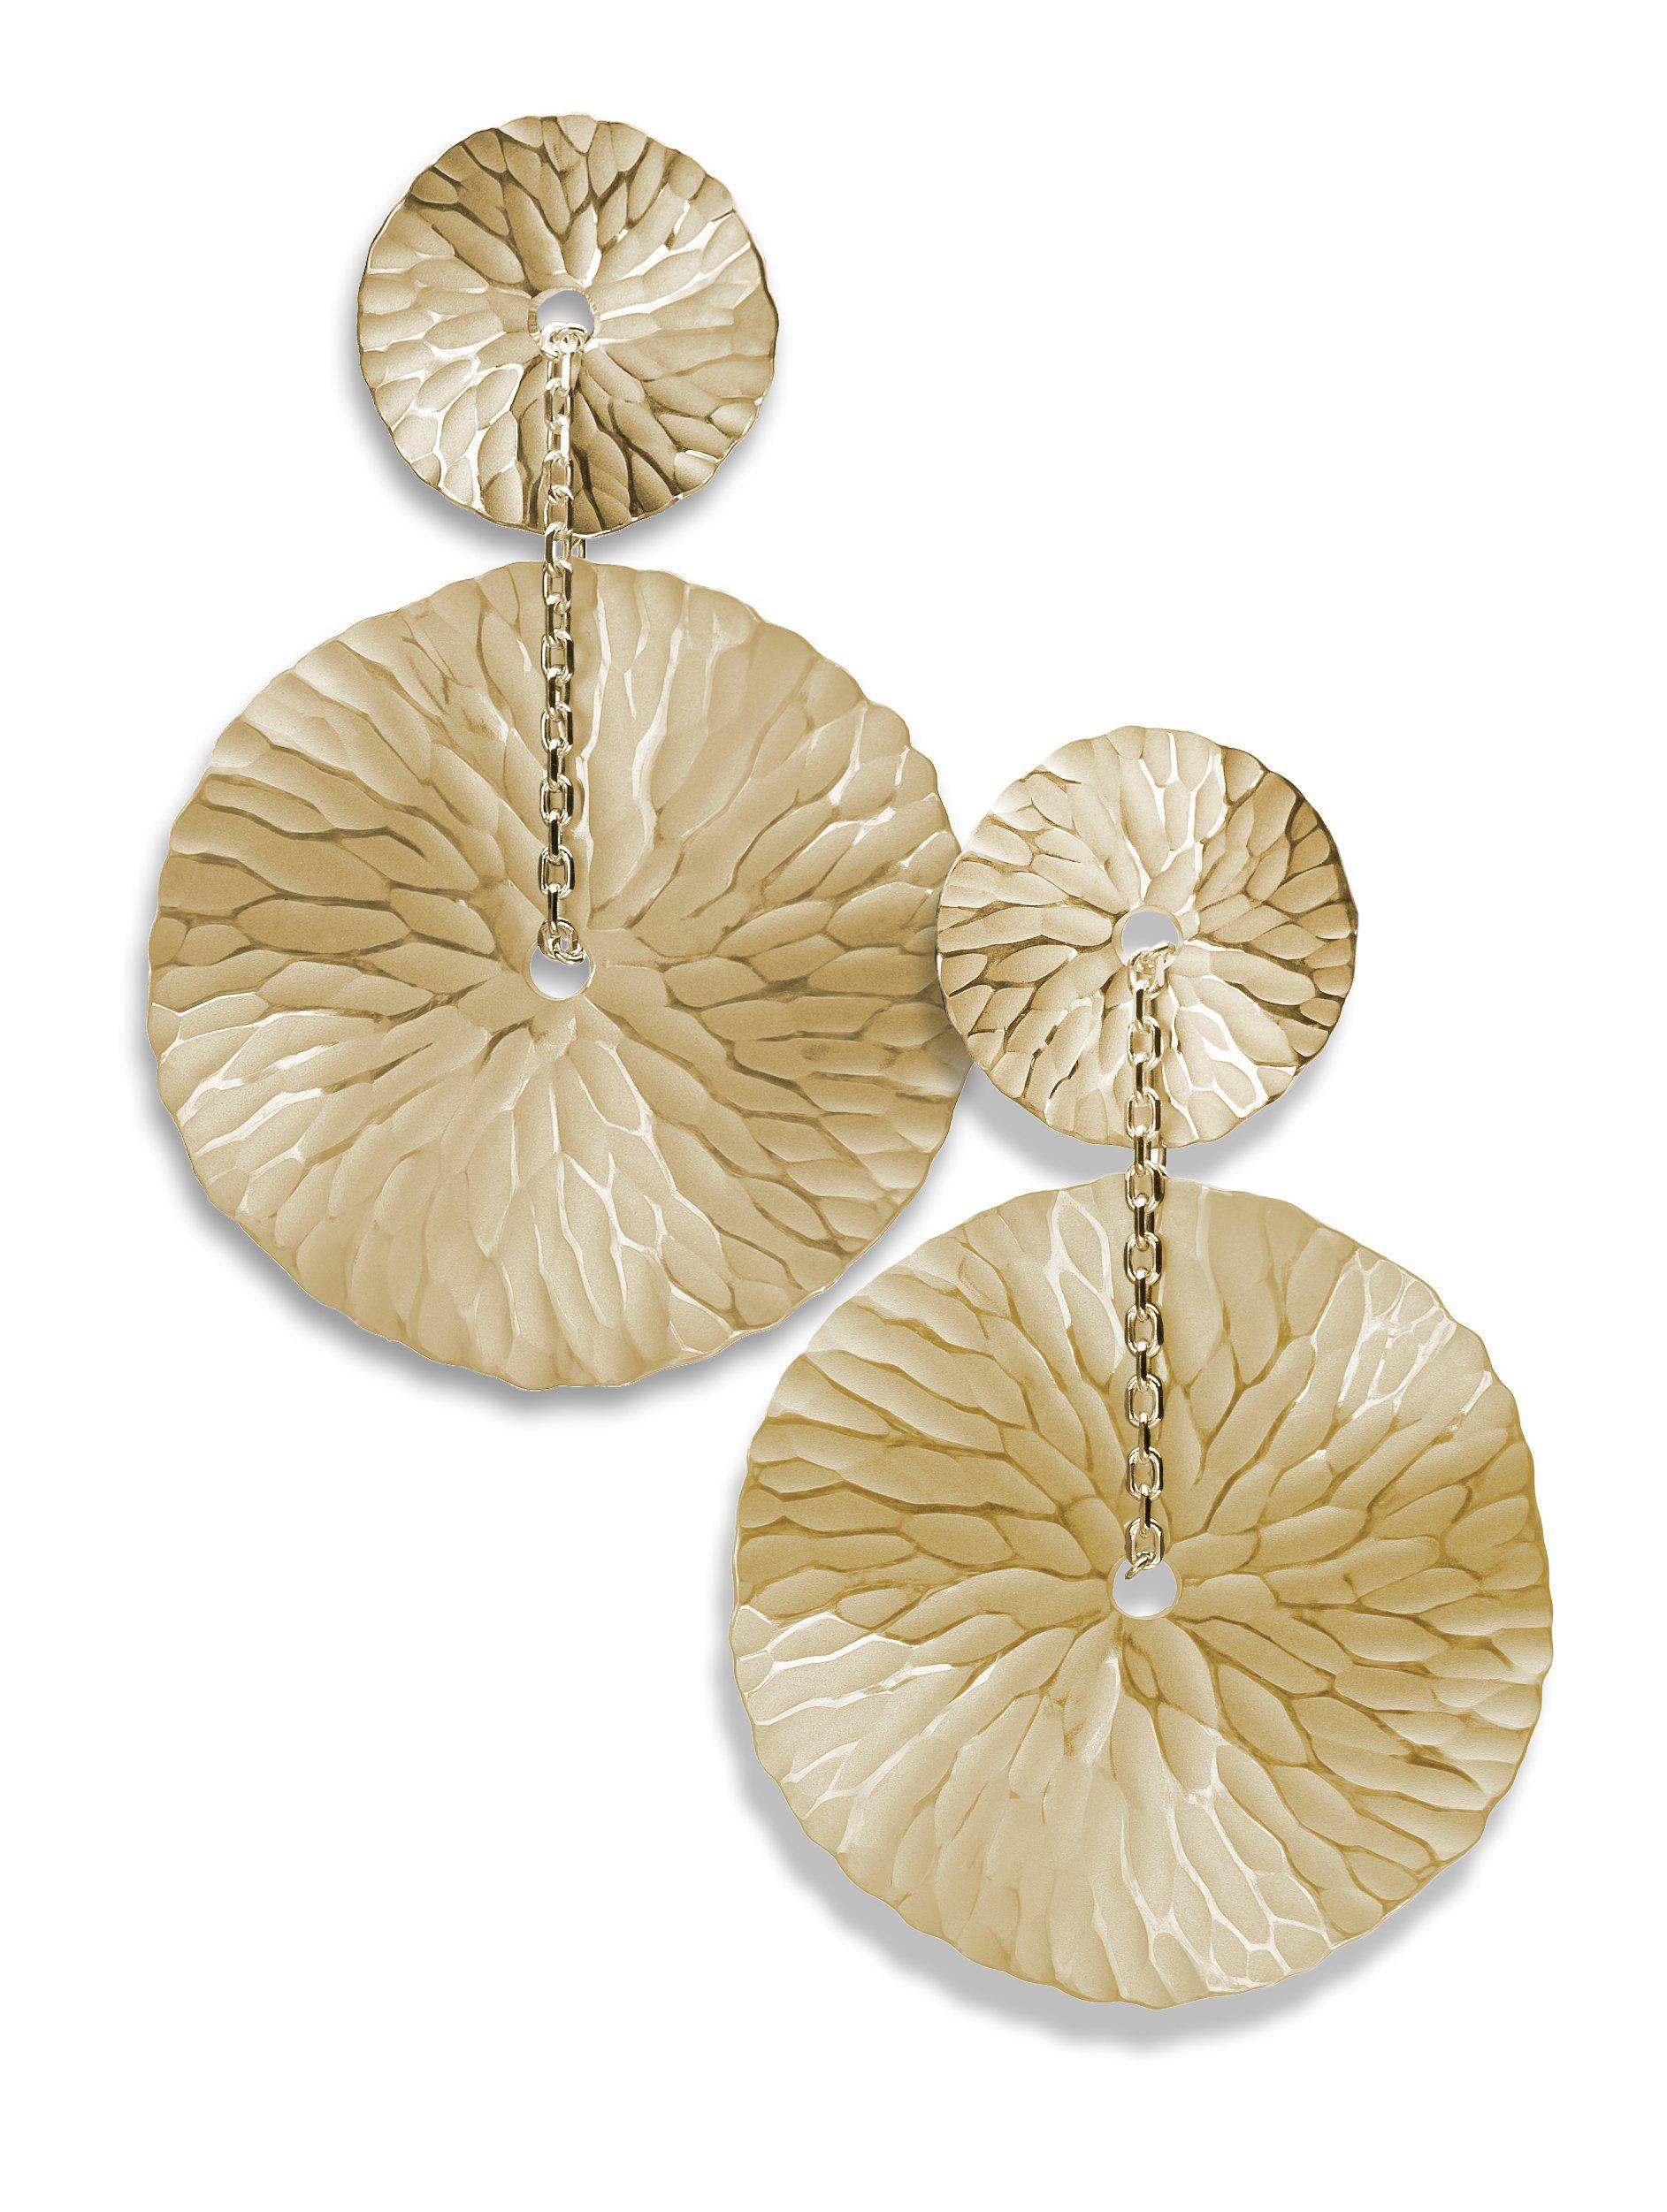 Oasis Medallion Earrings-Jewelry-Toby Pomeroy-Sorrel Sky Gallery